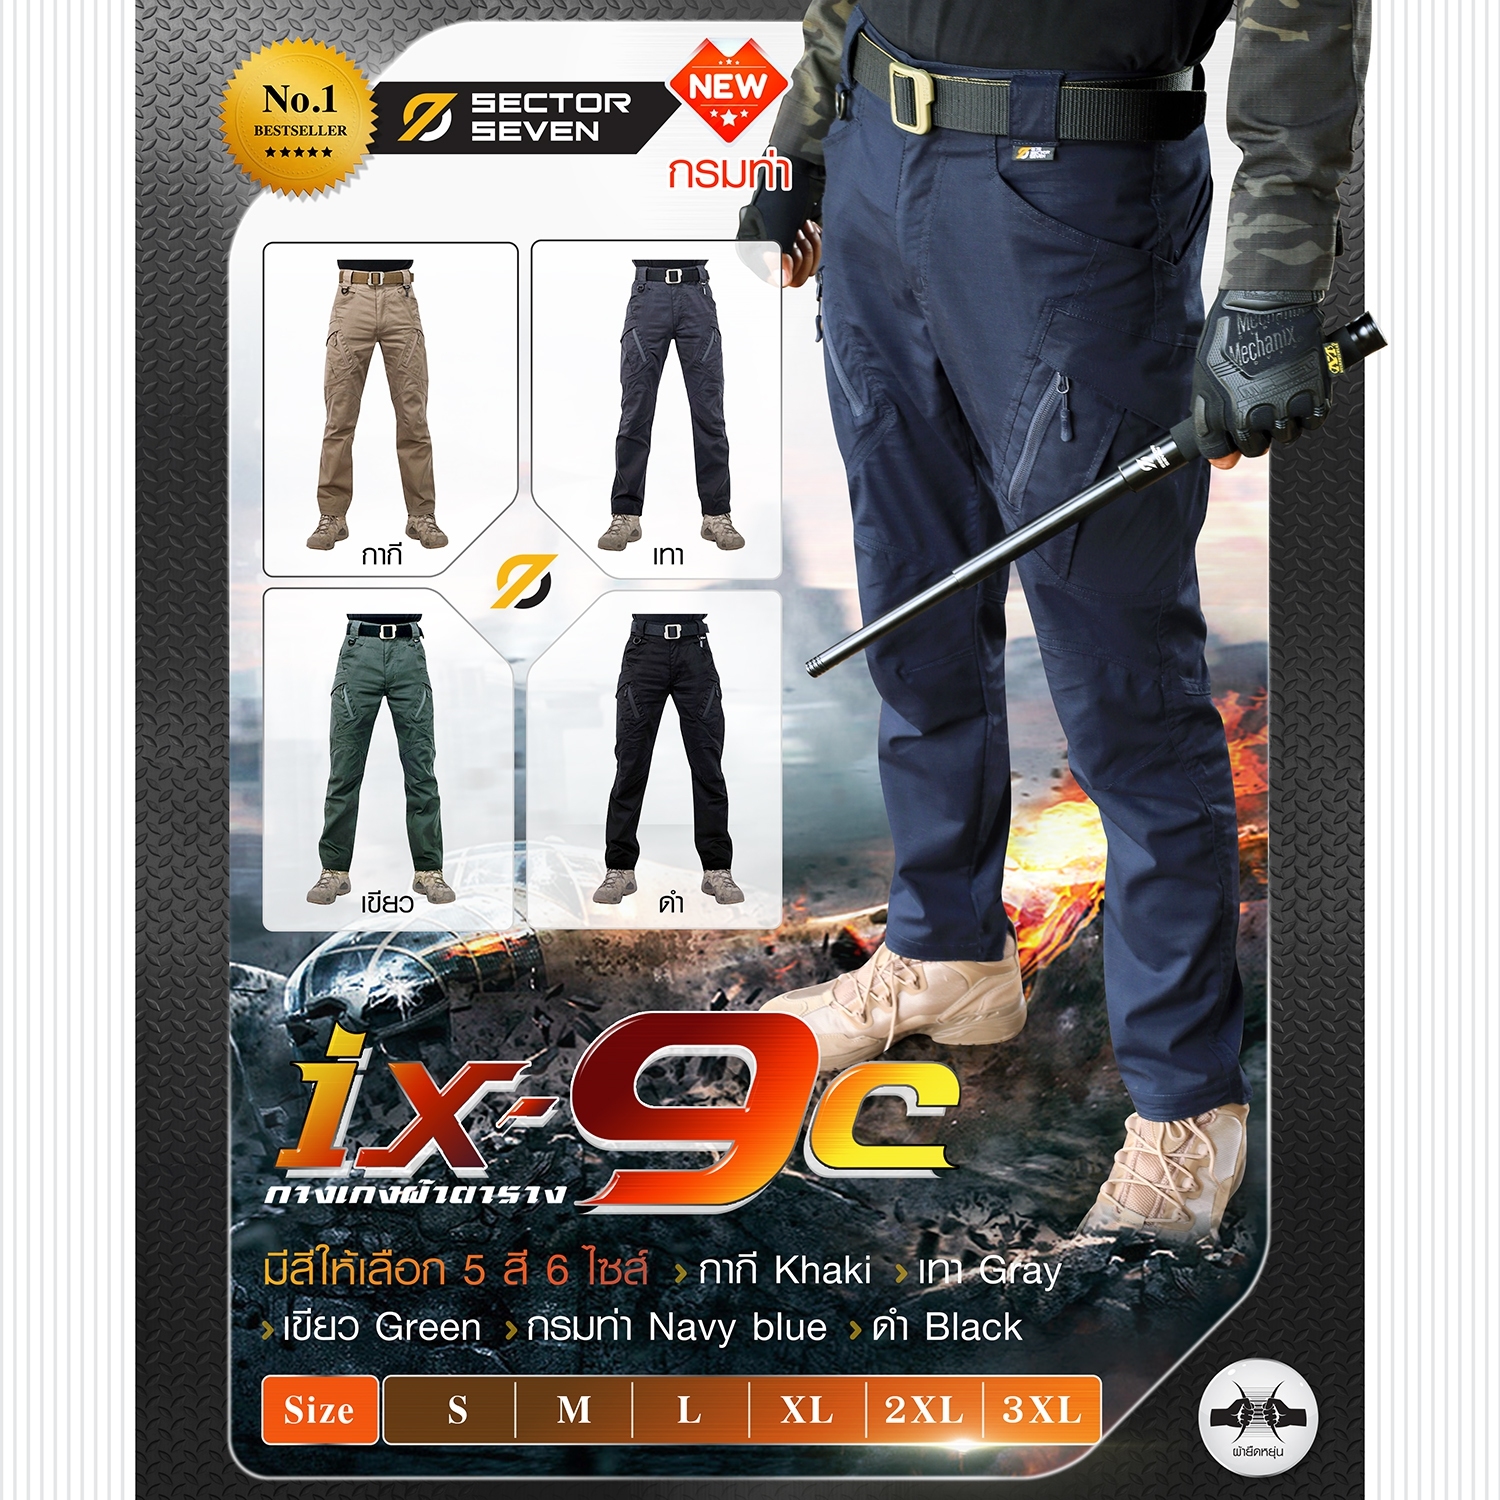 กางเกง Sector Seven รุ่น IX9C ผ้าตาราง (สีมาใหม่ สีกรมท่า) กางเกงทหาร กางเกงเดินป่า กางยุทธวิธี BY Tactical unit